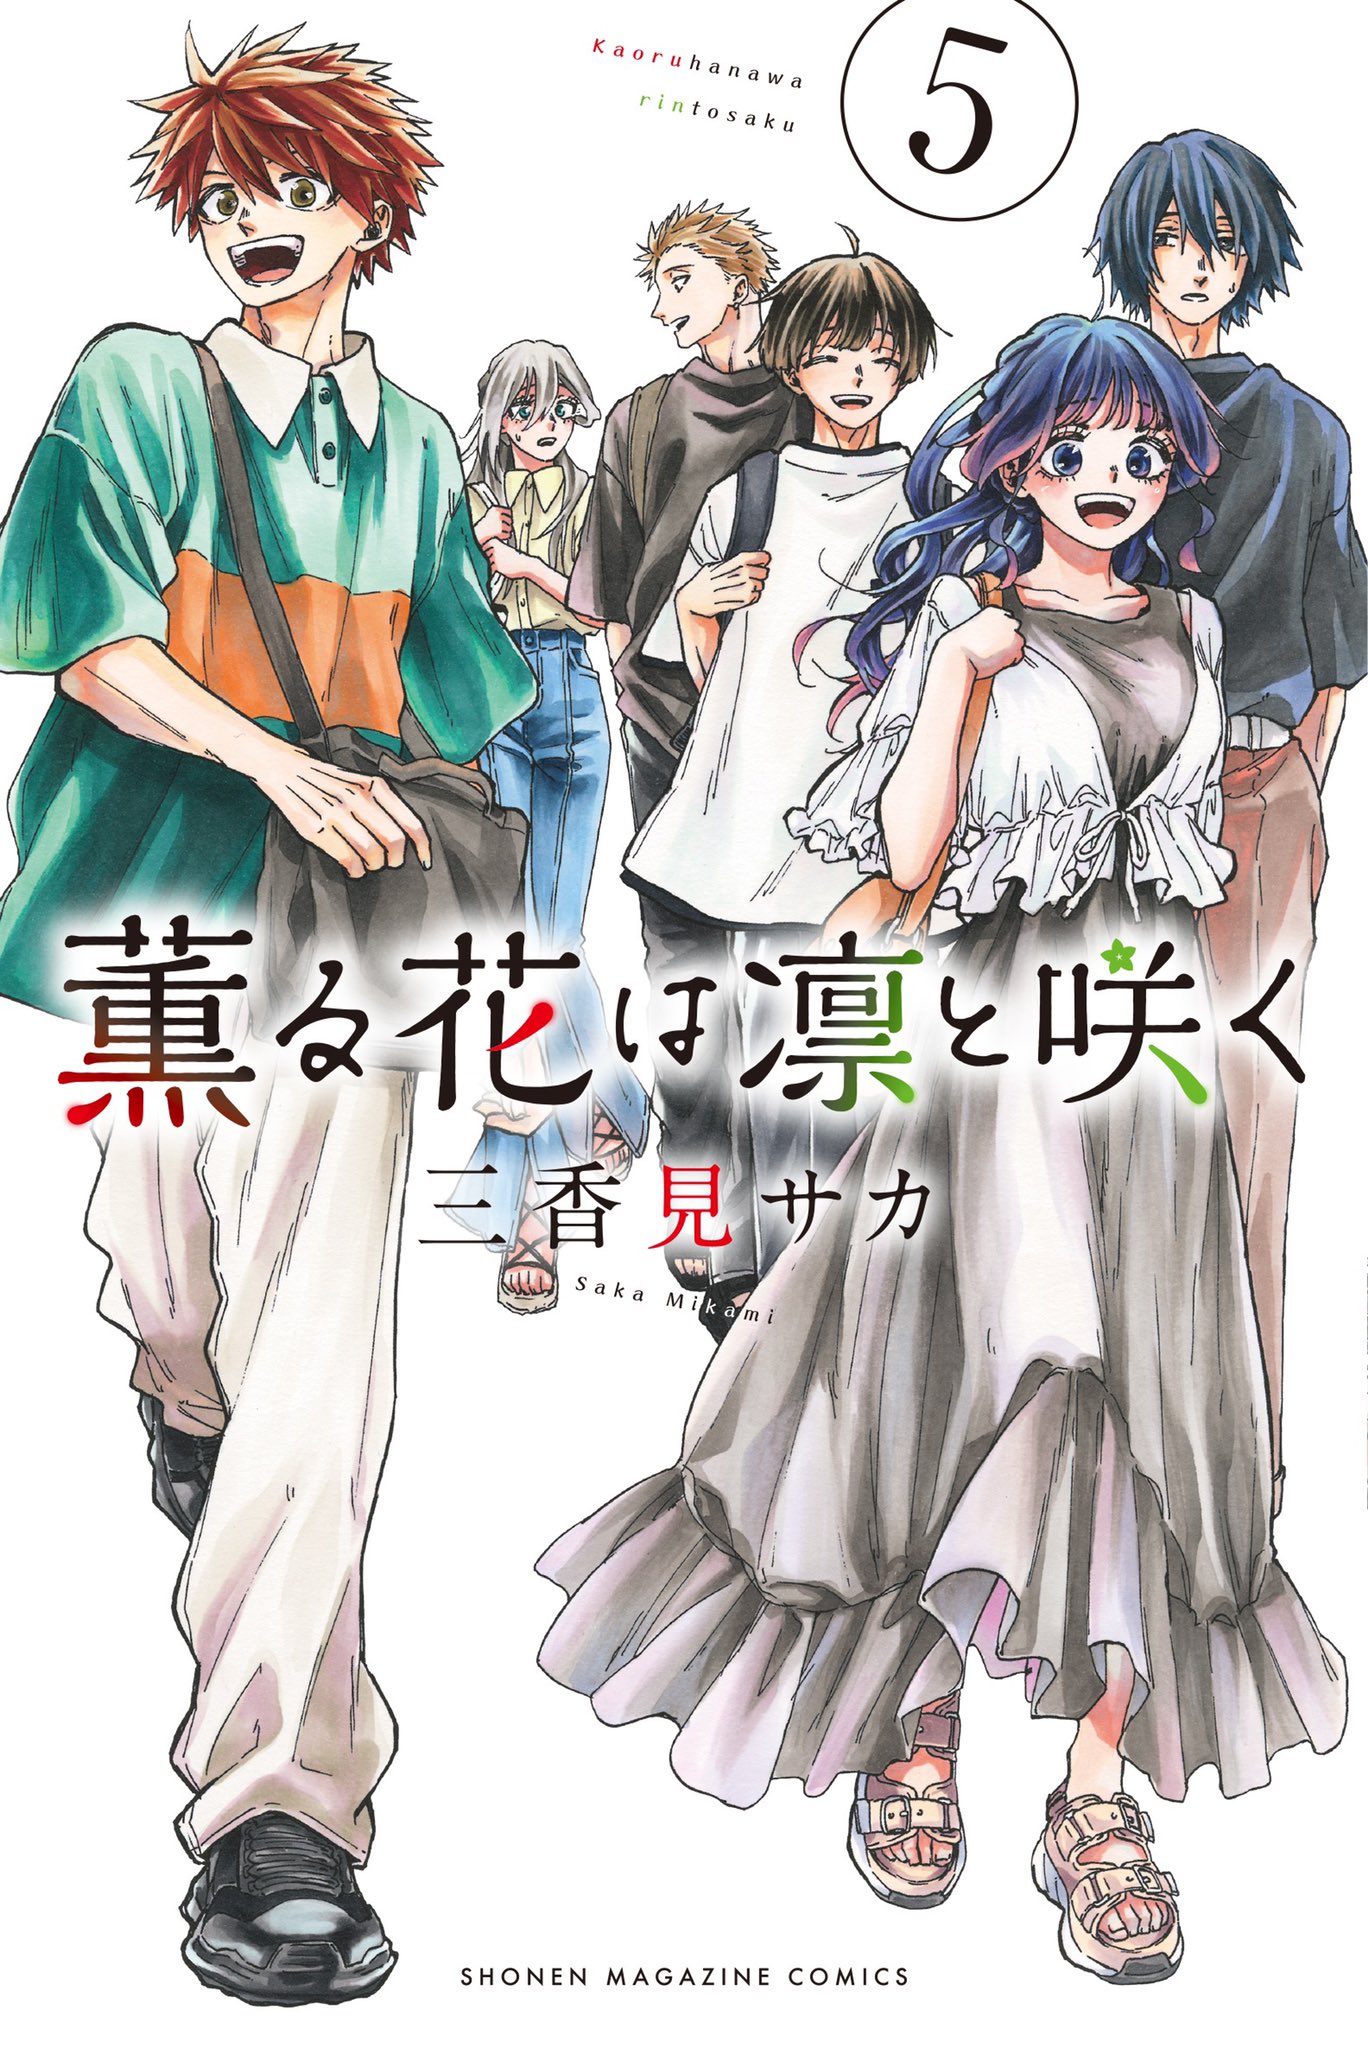 Aoru Hana Wa Rin To Saku Manga Volume 5 | Kaoru Hana wa Rin to Saku Wiki | Fandom